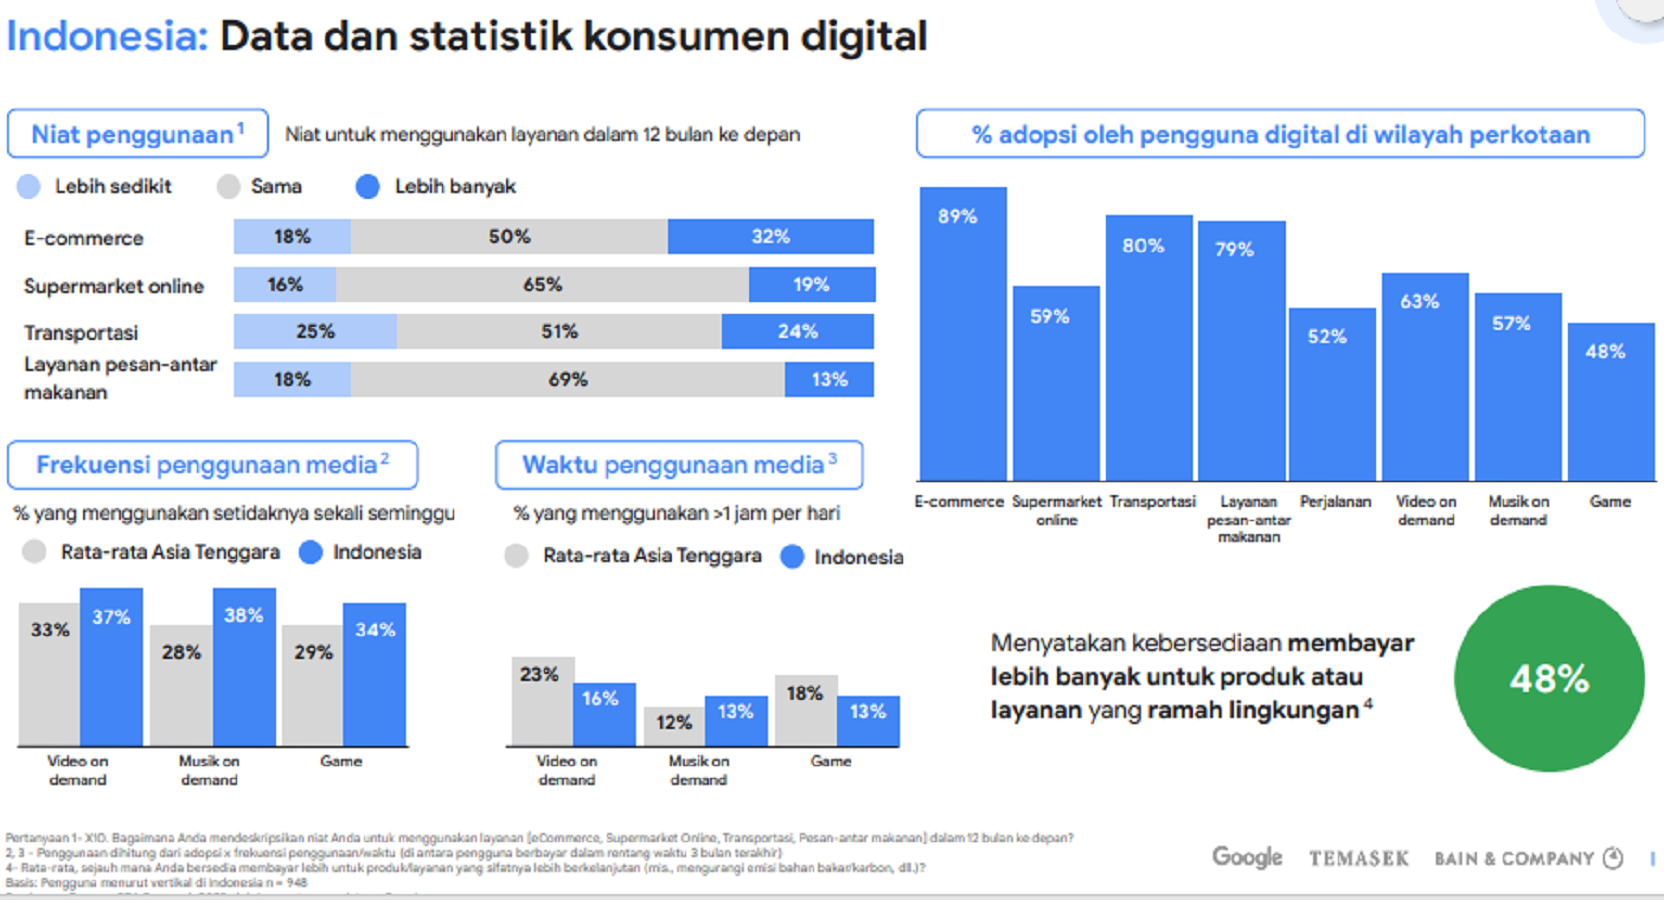 Proyeksi jumlah pengguna media digital dan e-commerce di Indonesia